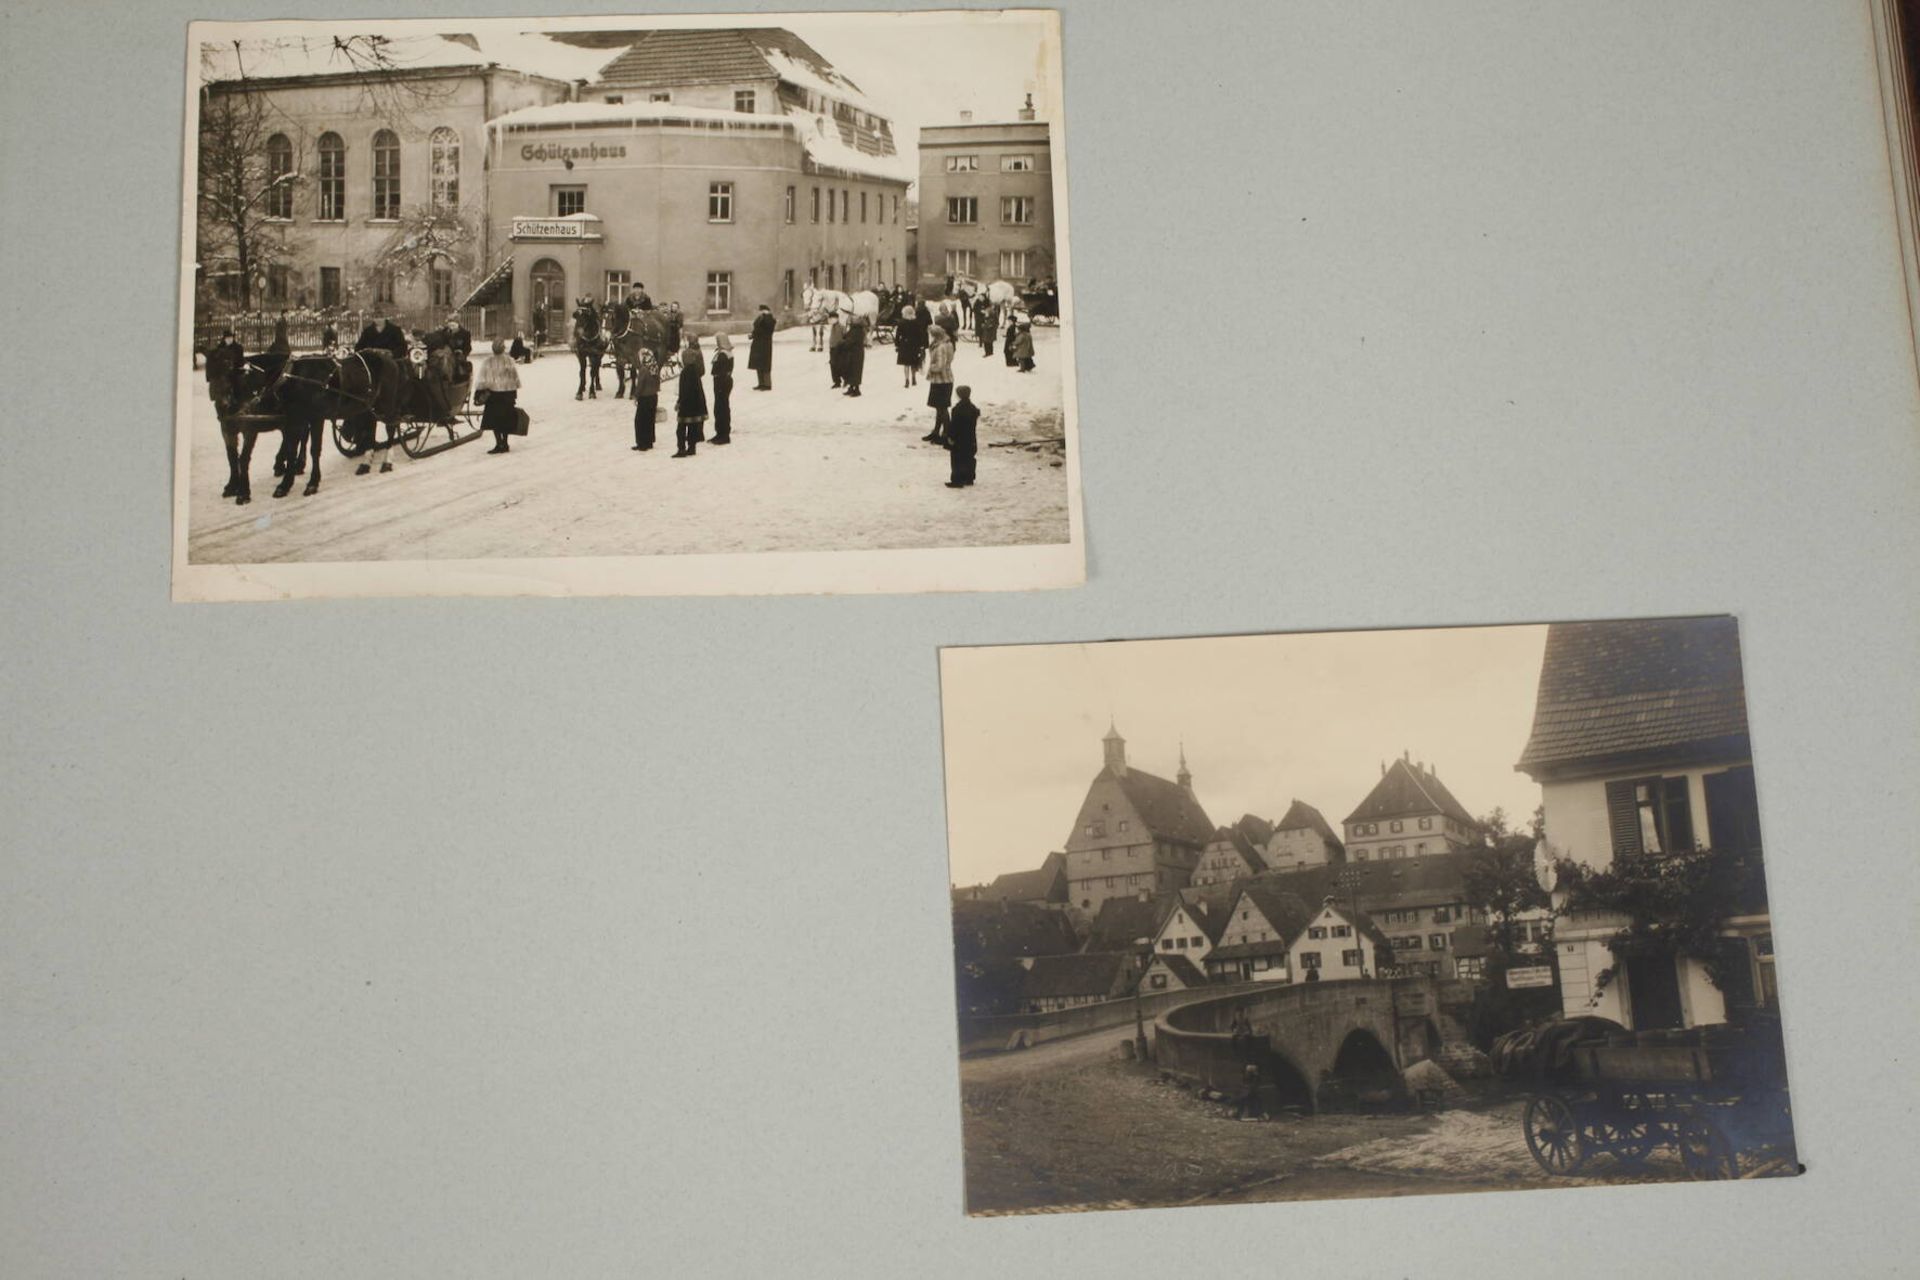 Fotoalbum um 190321 Blatt, mit Aufnahmen aus Schweizermühle in der Sächsischen Schweiz, Bad Soden- - Image 7 of 7